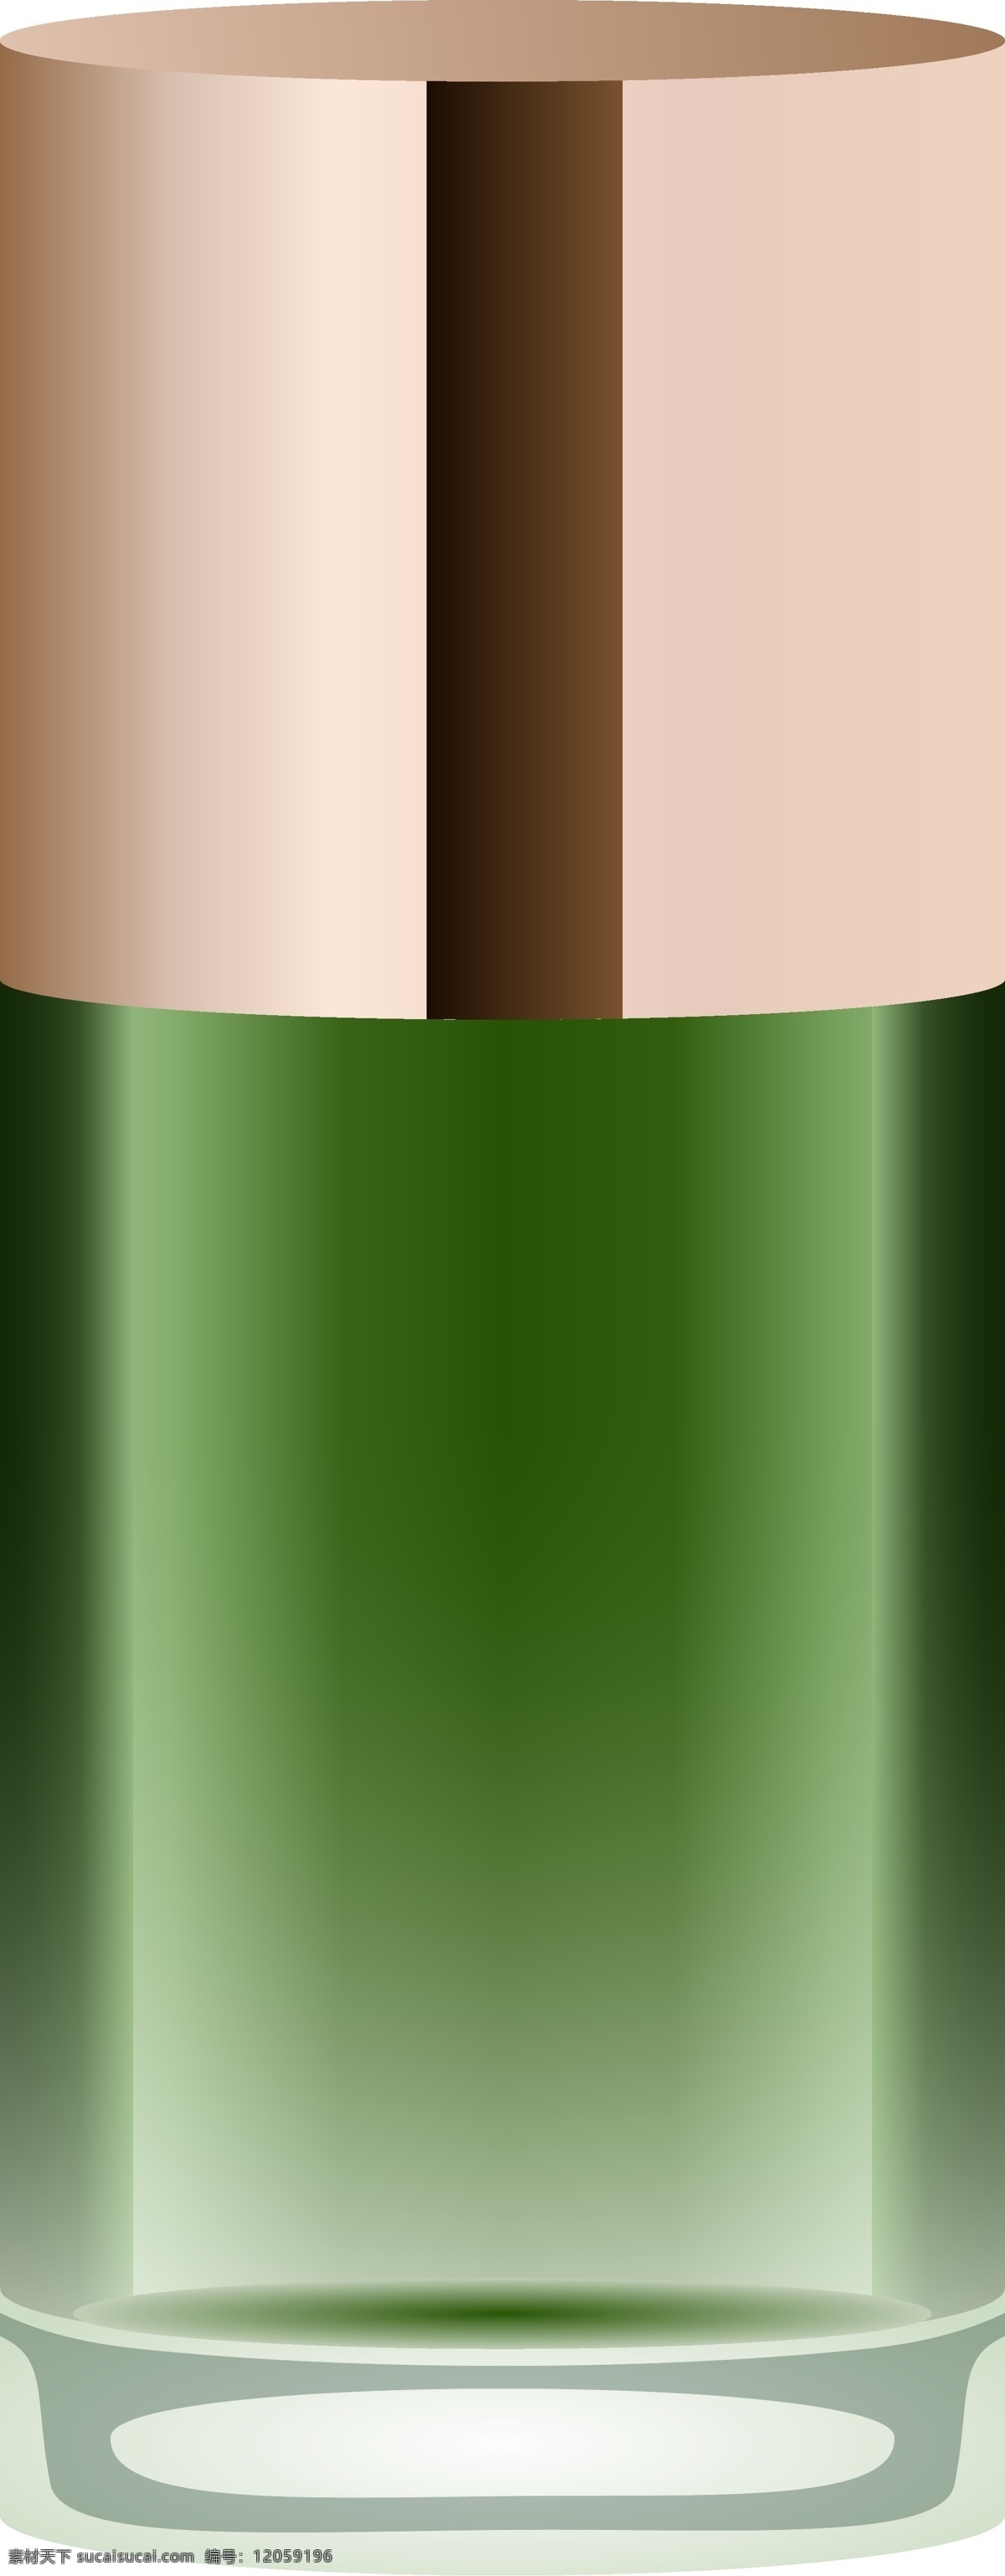 美容用品 绿色 爽肤水 瓶子 彩色 装饰 平面设计 原创 透明底 免抠 节日 海报装饰 清新 通用